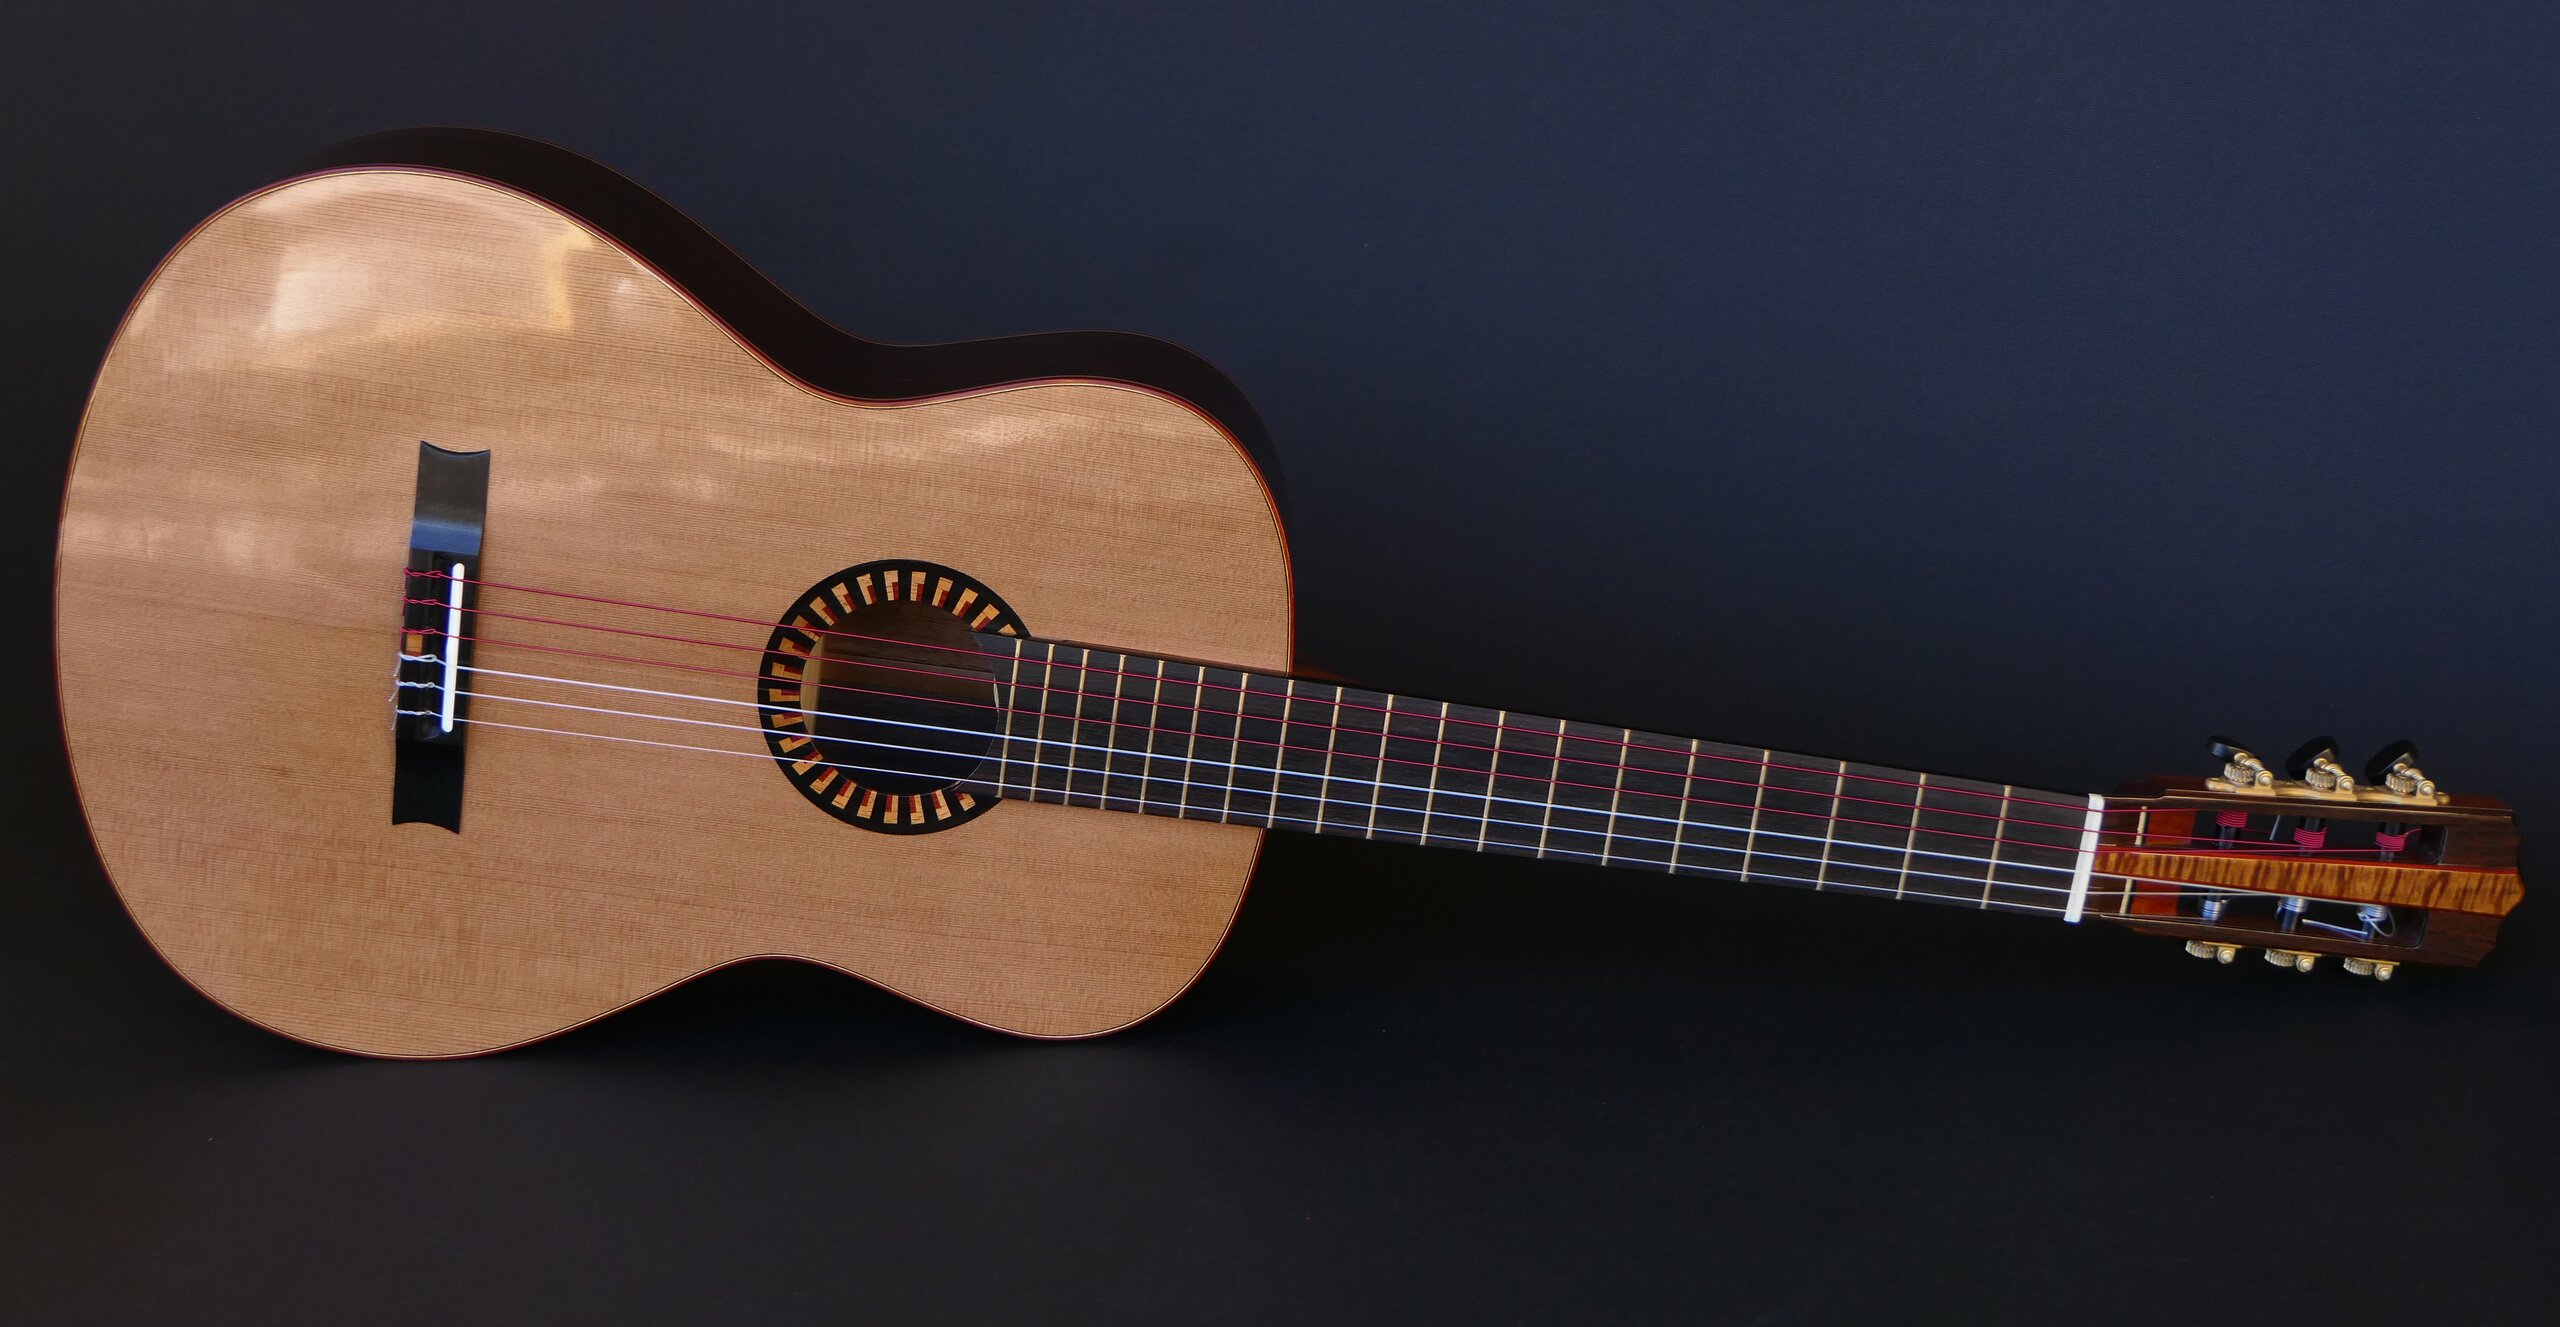 Custom guitars. Gore classical guitar with cedar top and art deco trim